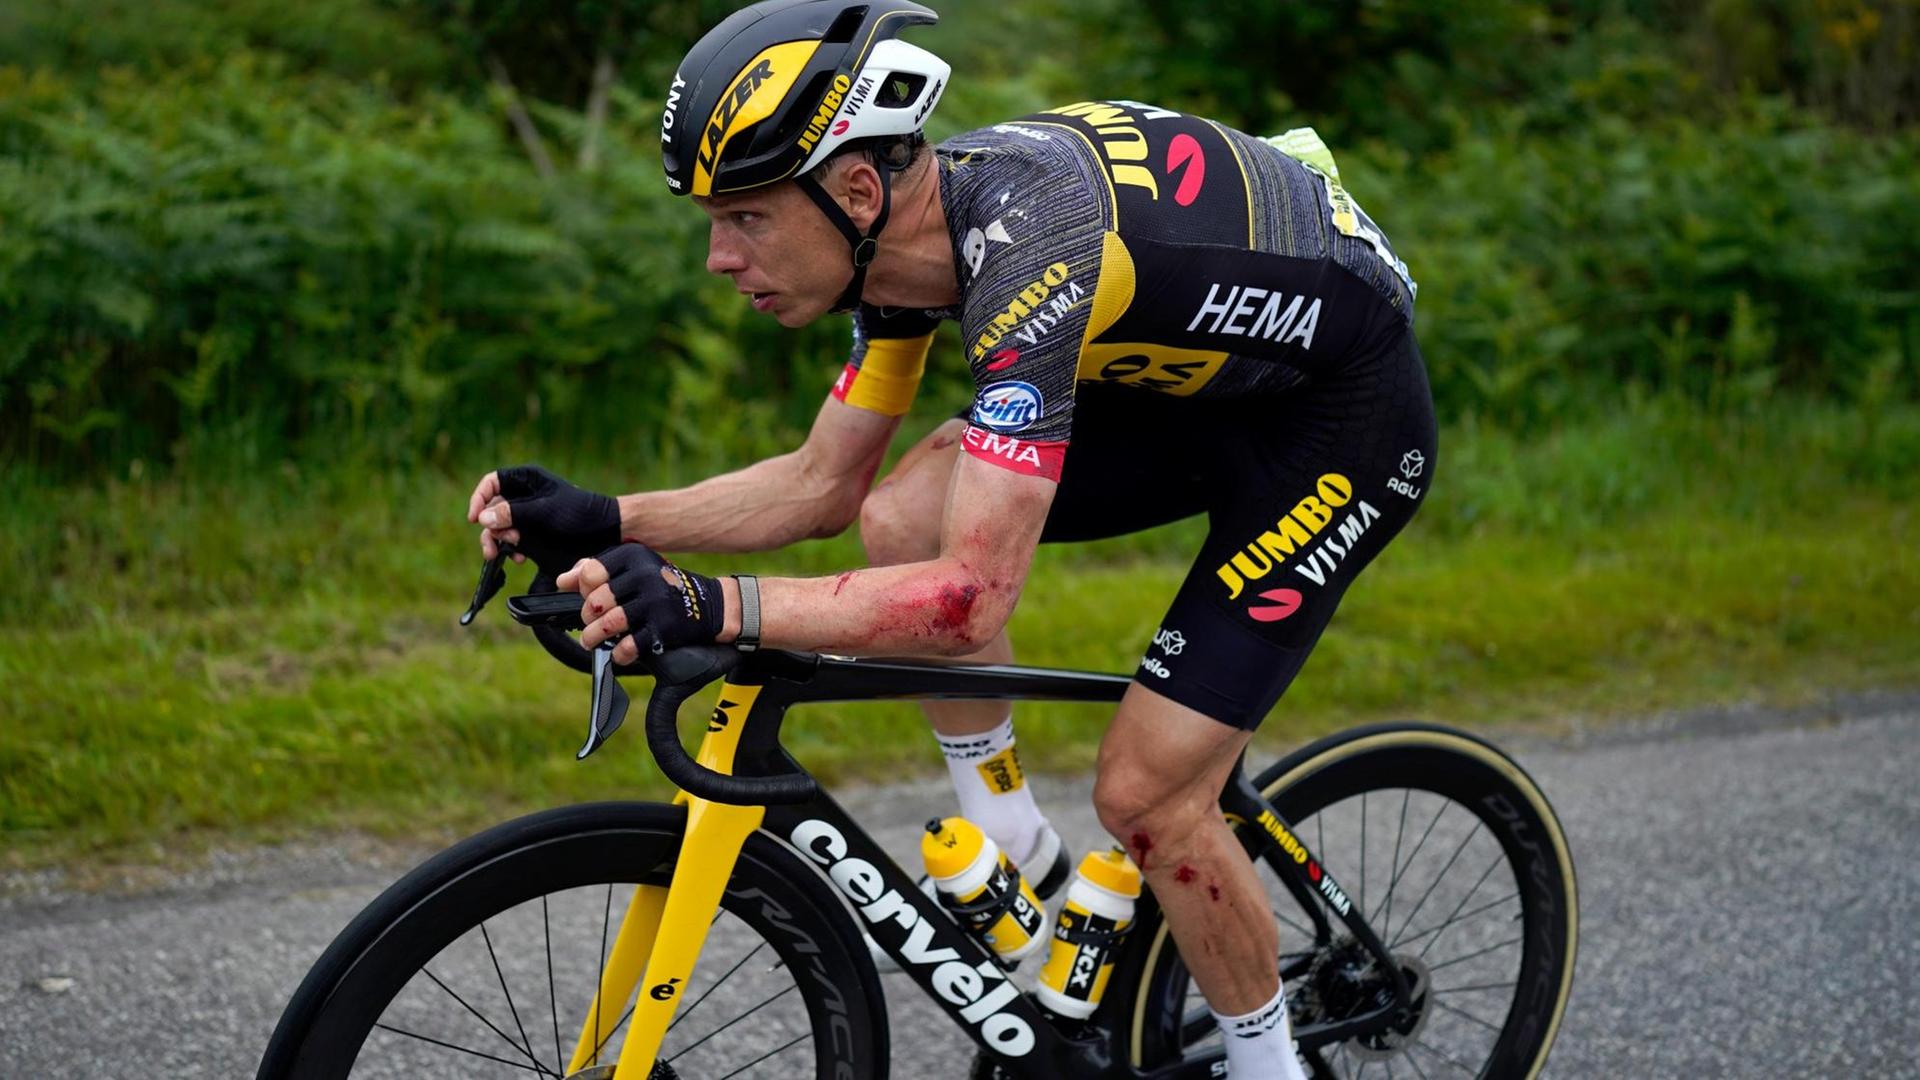 Der deutsche Rad-Profi Tony Martin auf seinem Fahr-Rad bei der Tour den France.